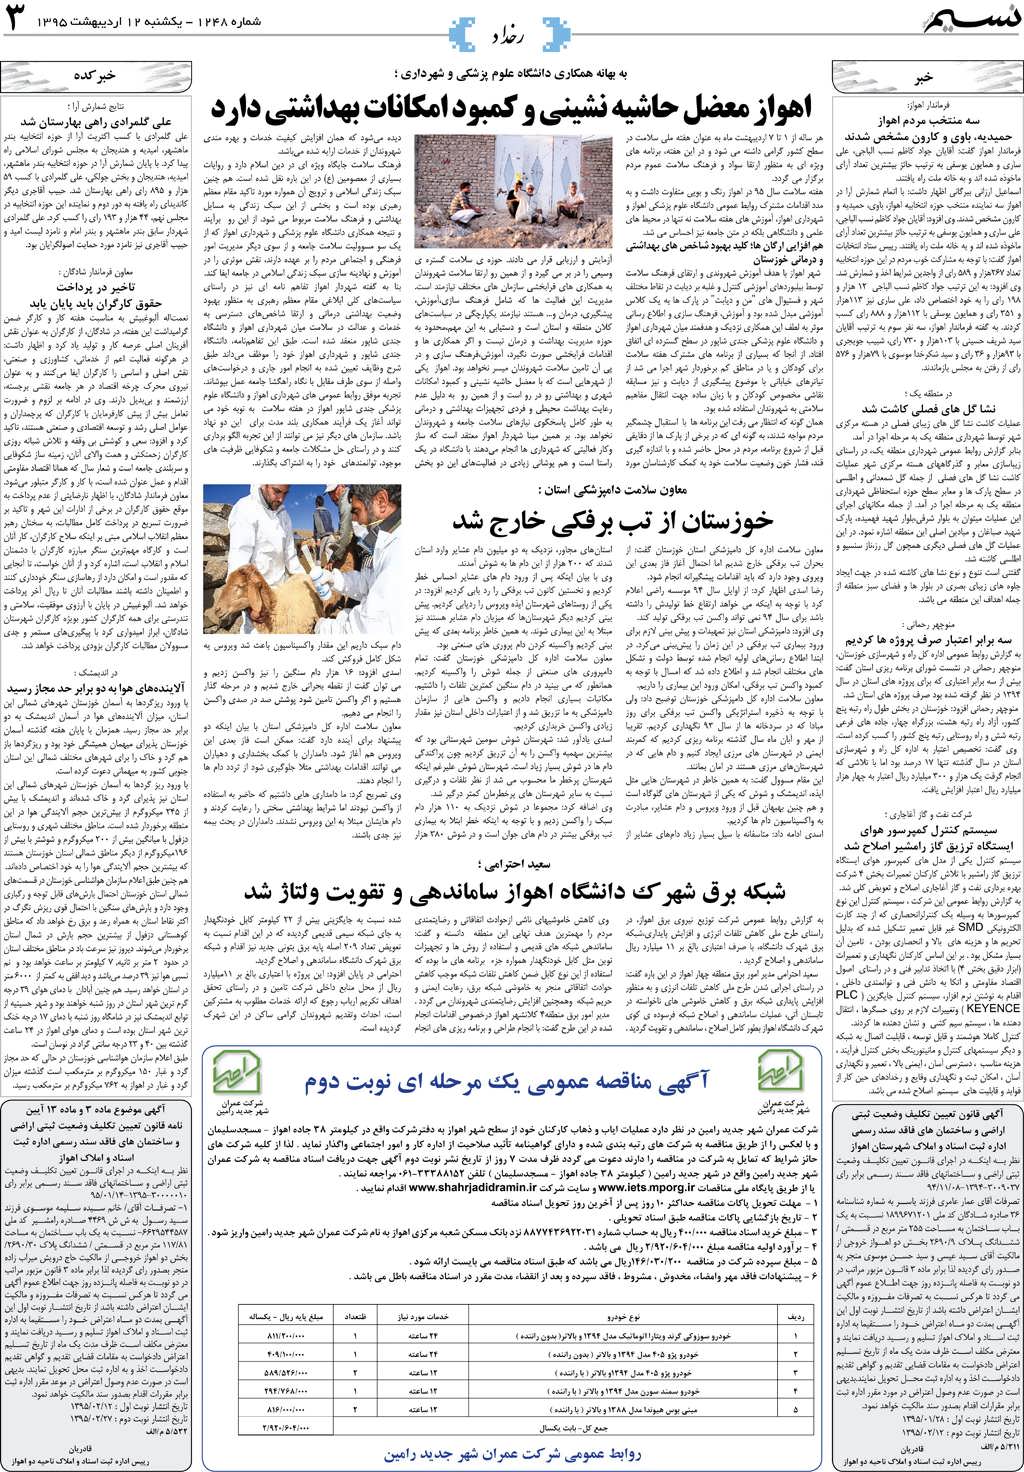 صفحه رخداد روزنامه نسیم شماره 1248